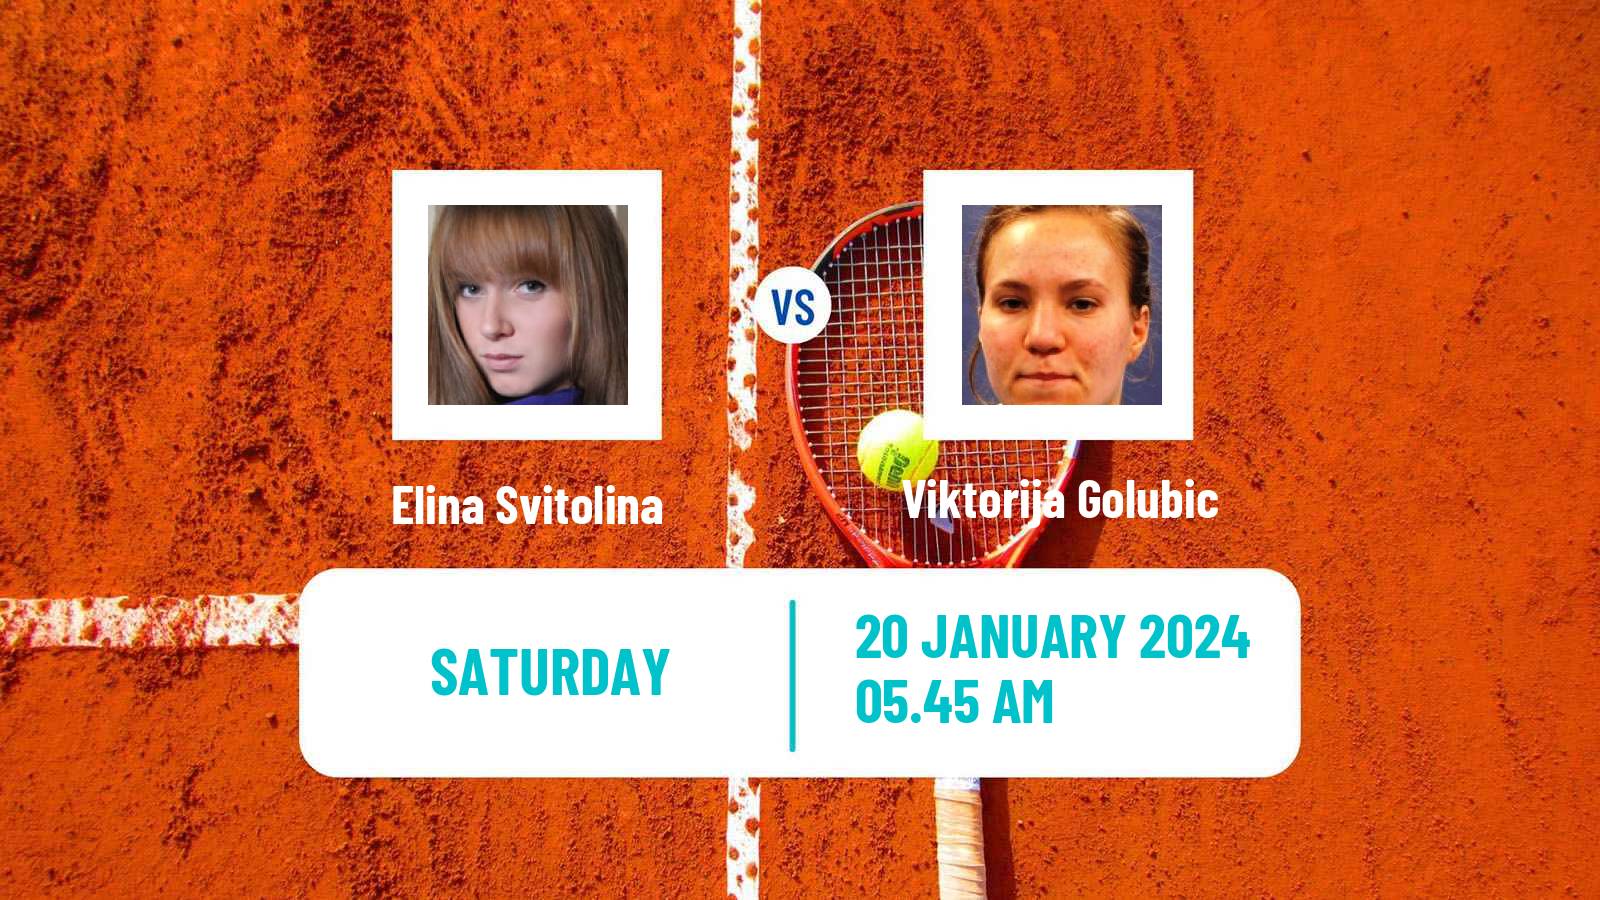 Tennis WTA Australian Open Elina Svitolina - Viktorija Golubic